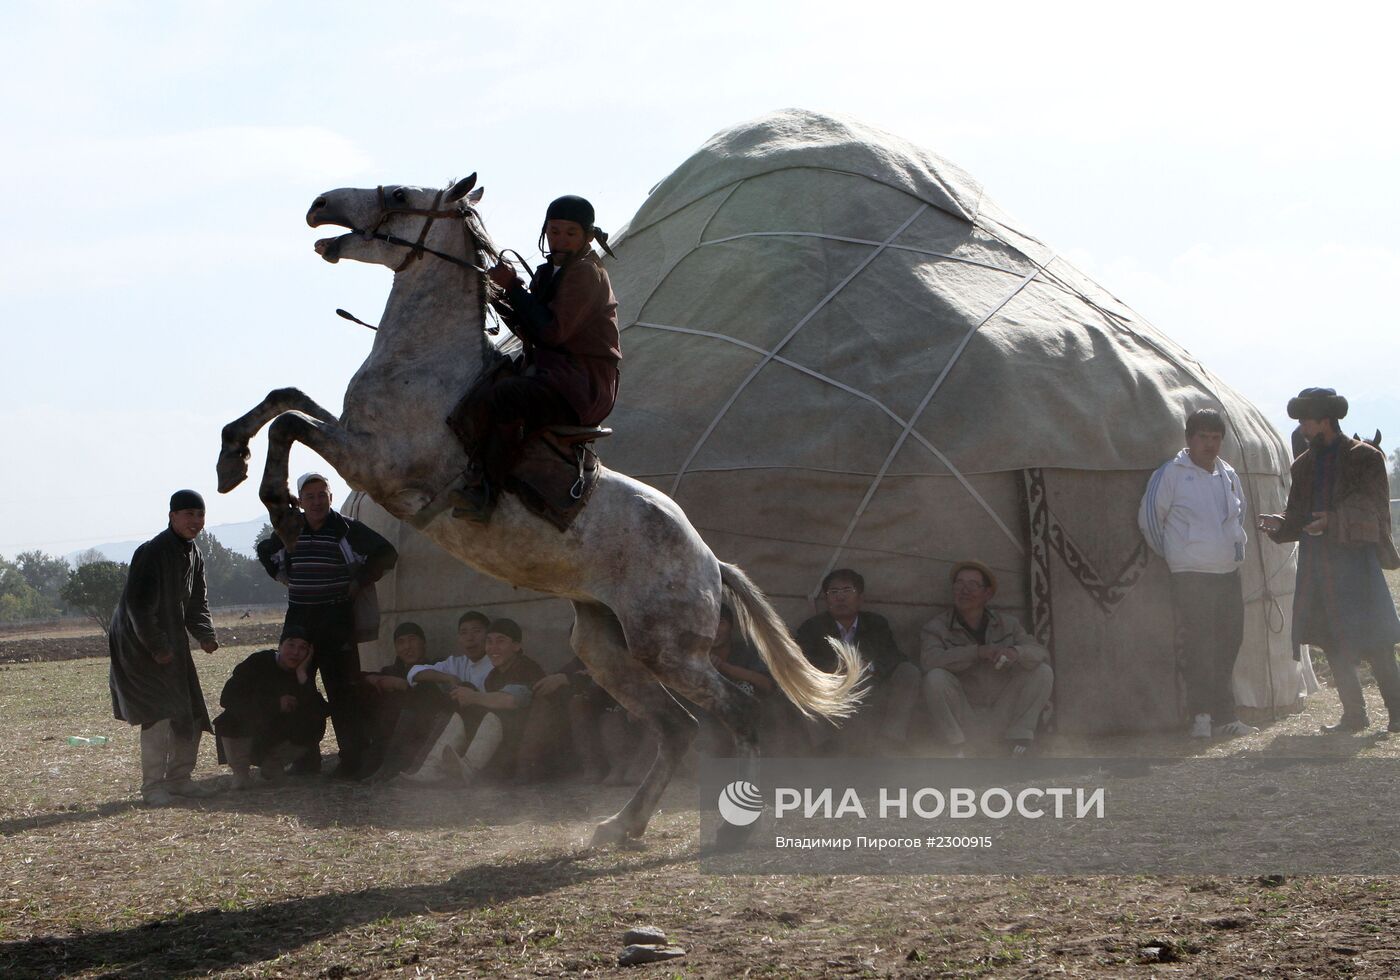 Подготовка к празднованию Курбан-Байрам в Киргизии